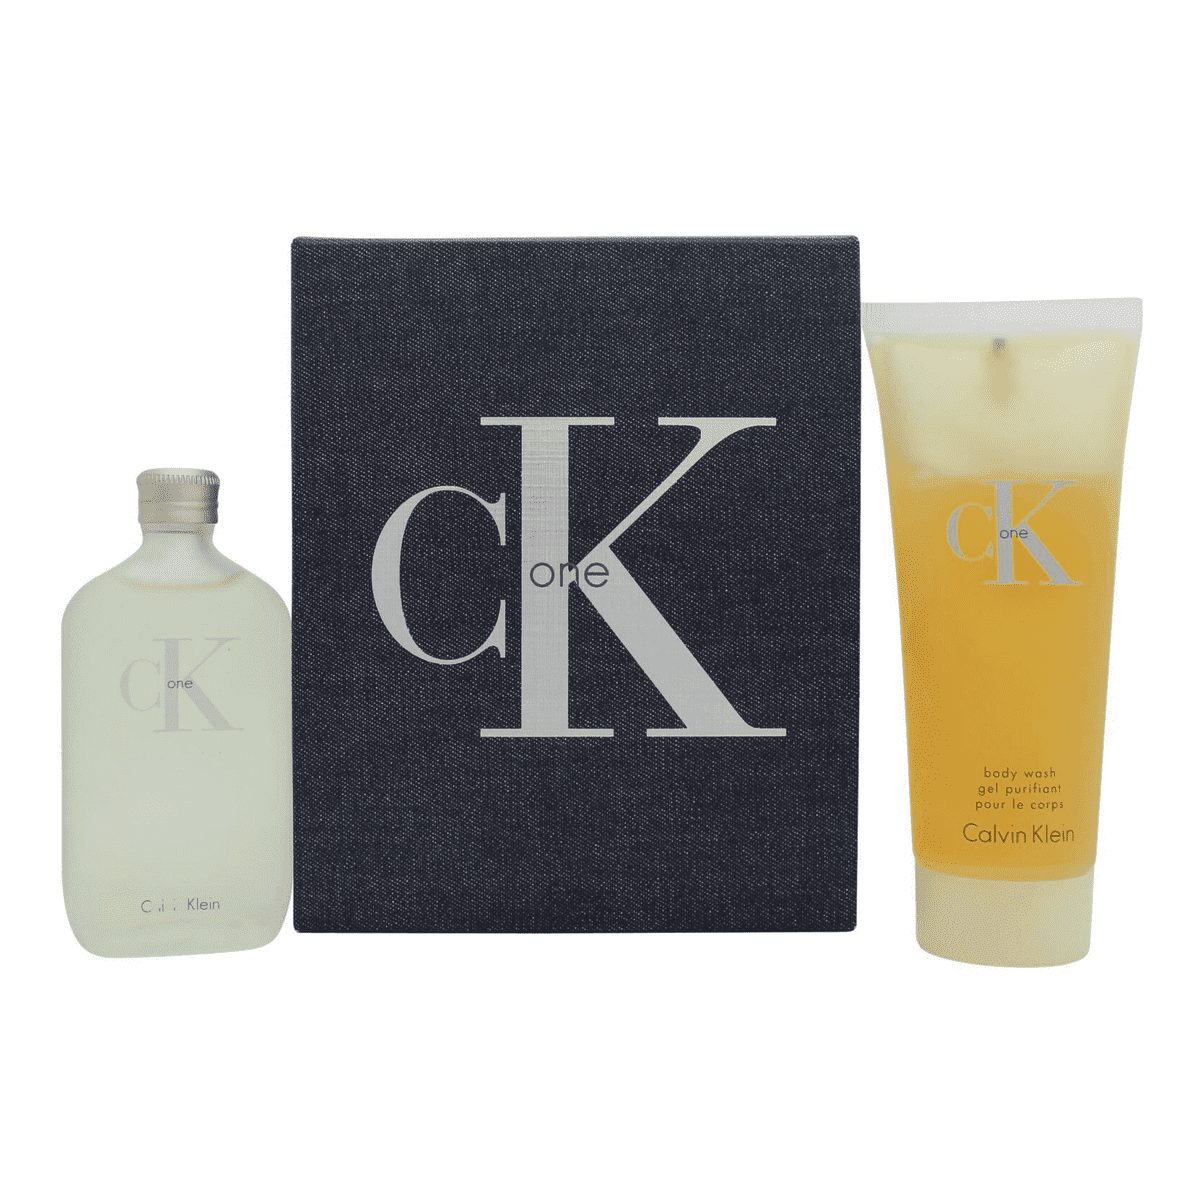 Calvin Klein CK One Gift Set 50ml EDT + 100ml Body Wash